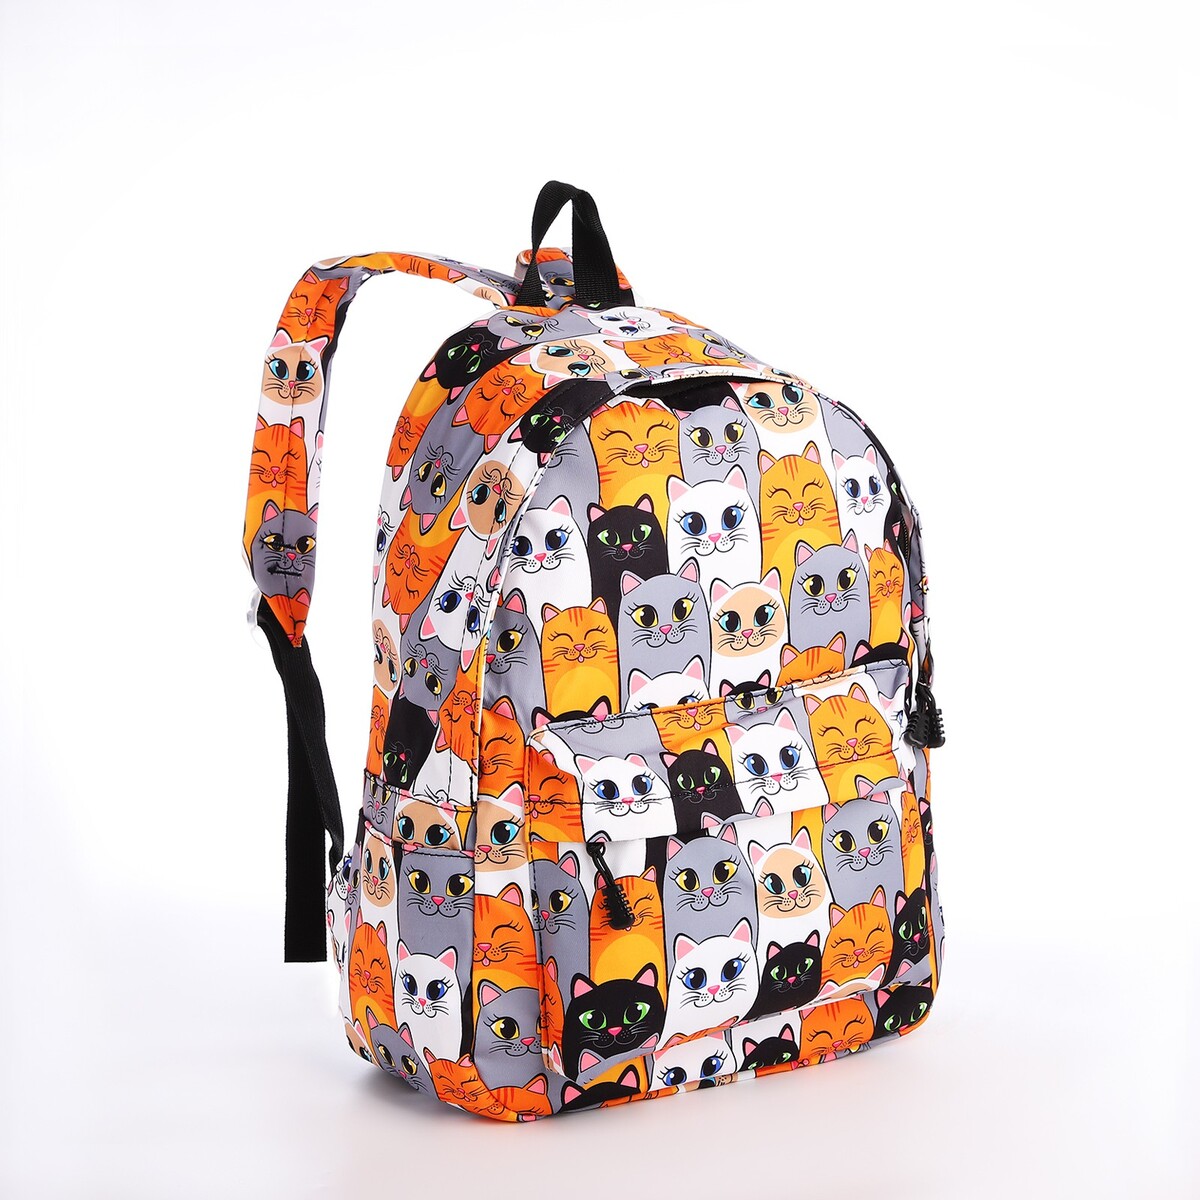 Рюкзак школьный из текстиля на молнии, 4 кармана, кошелек, цвет серый/оранжевый рюкзак 31 45 15 см отд на молнии 4 н кармана оранжевый